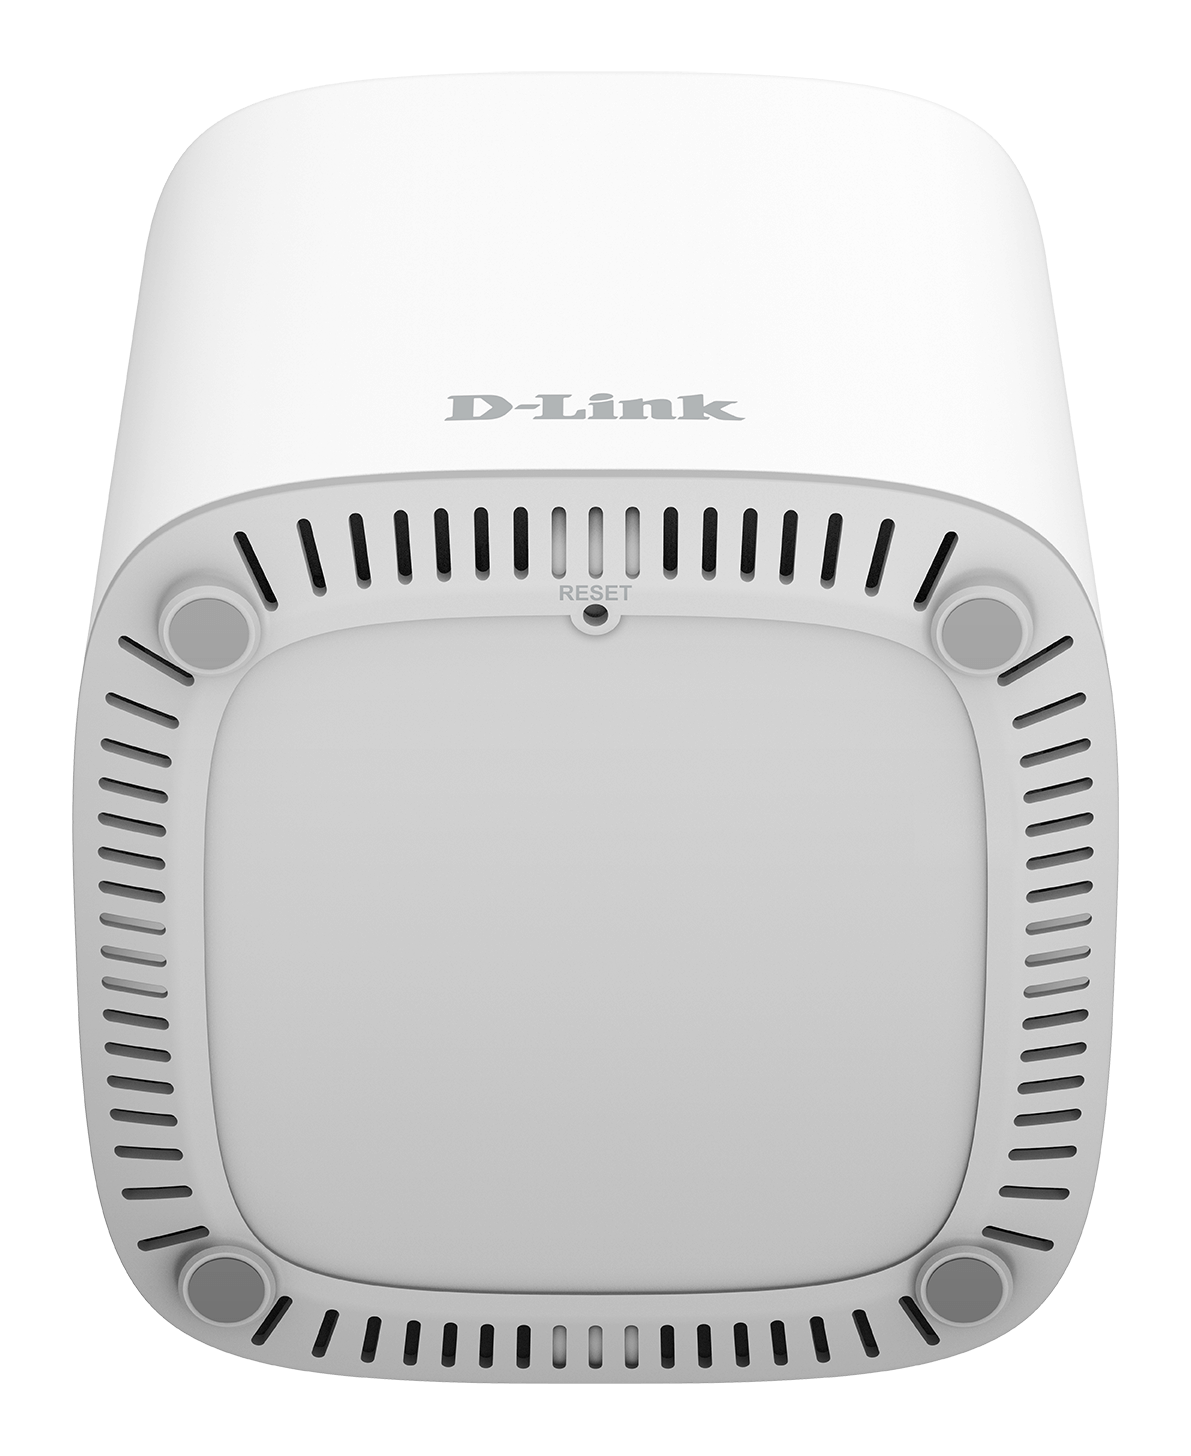 D-Link Covr Whole Home Mesh Wi-Fi: il Wi-Fi 6 per tutti